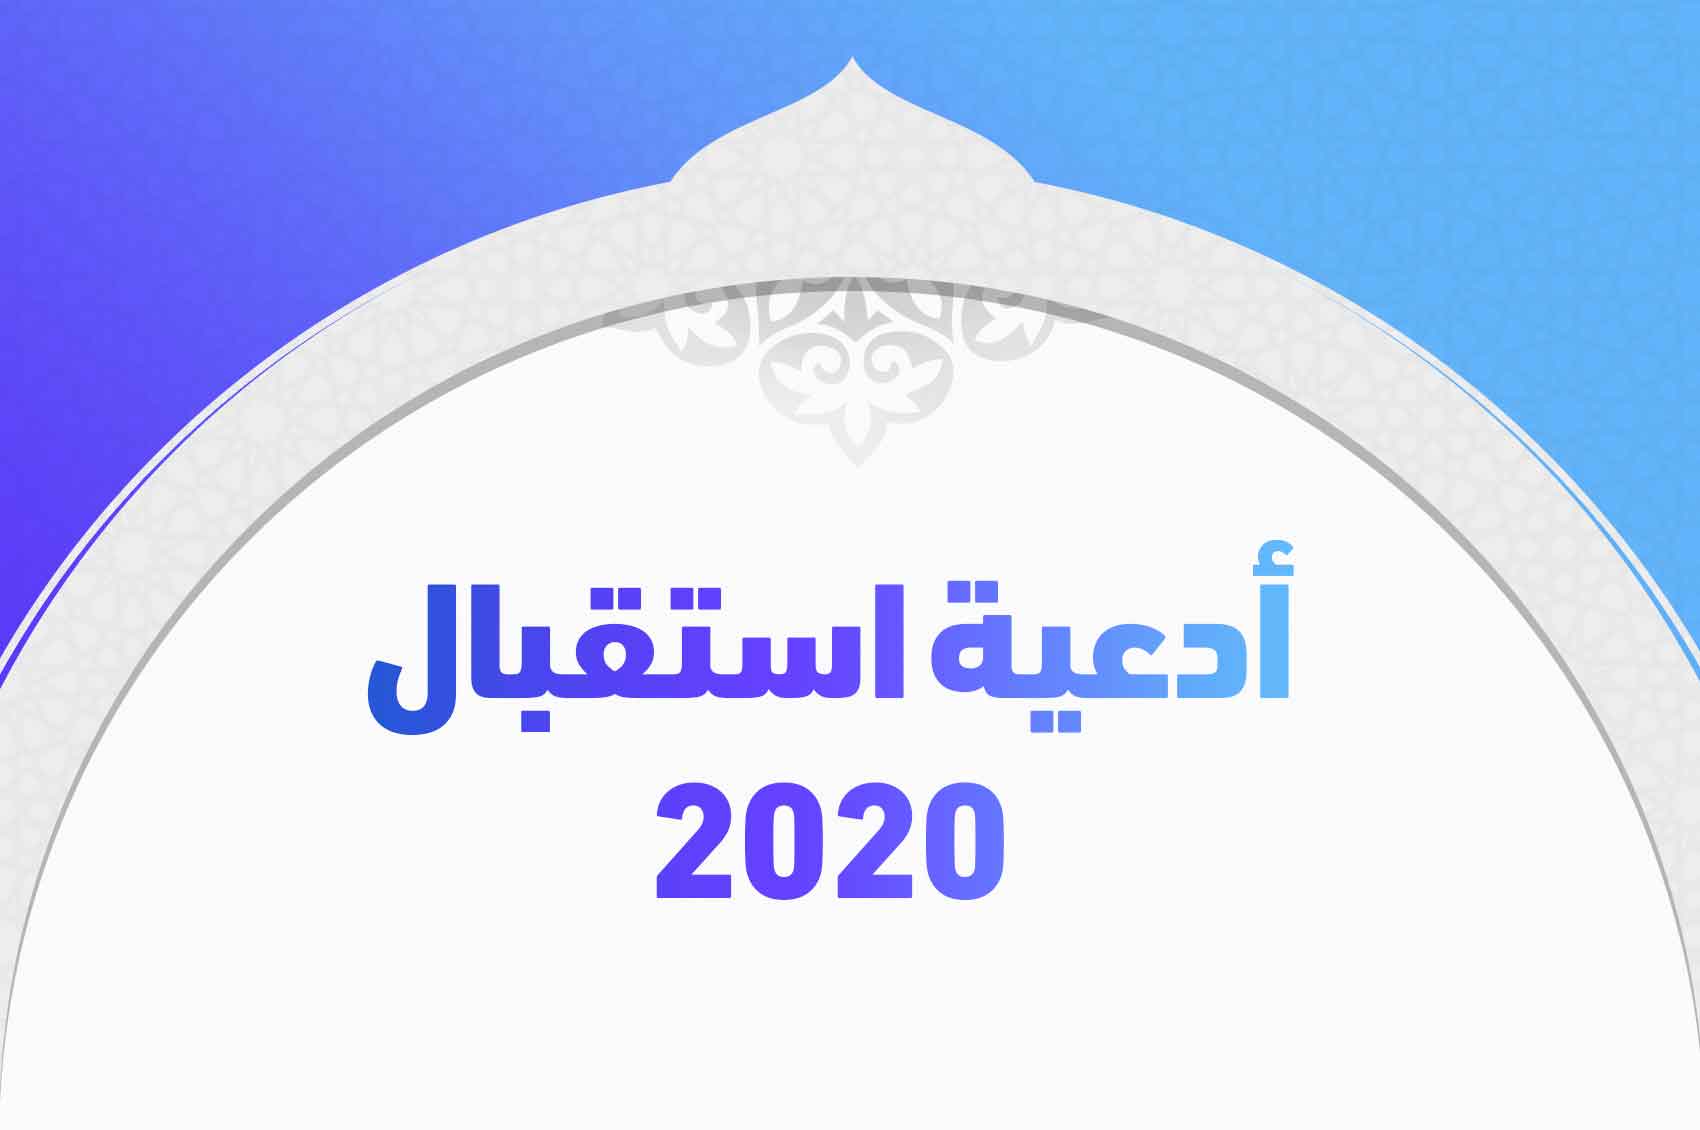 أدعية استقبال 2020 وأفضل أدعية العام الجديد "اللهم جلاء لكل حزن"